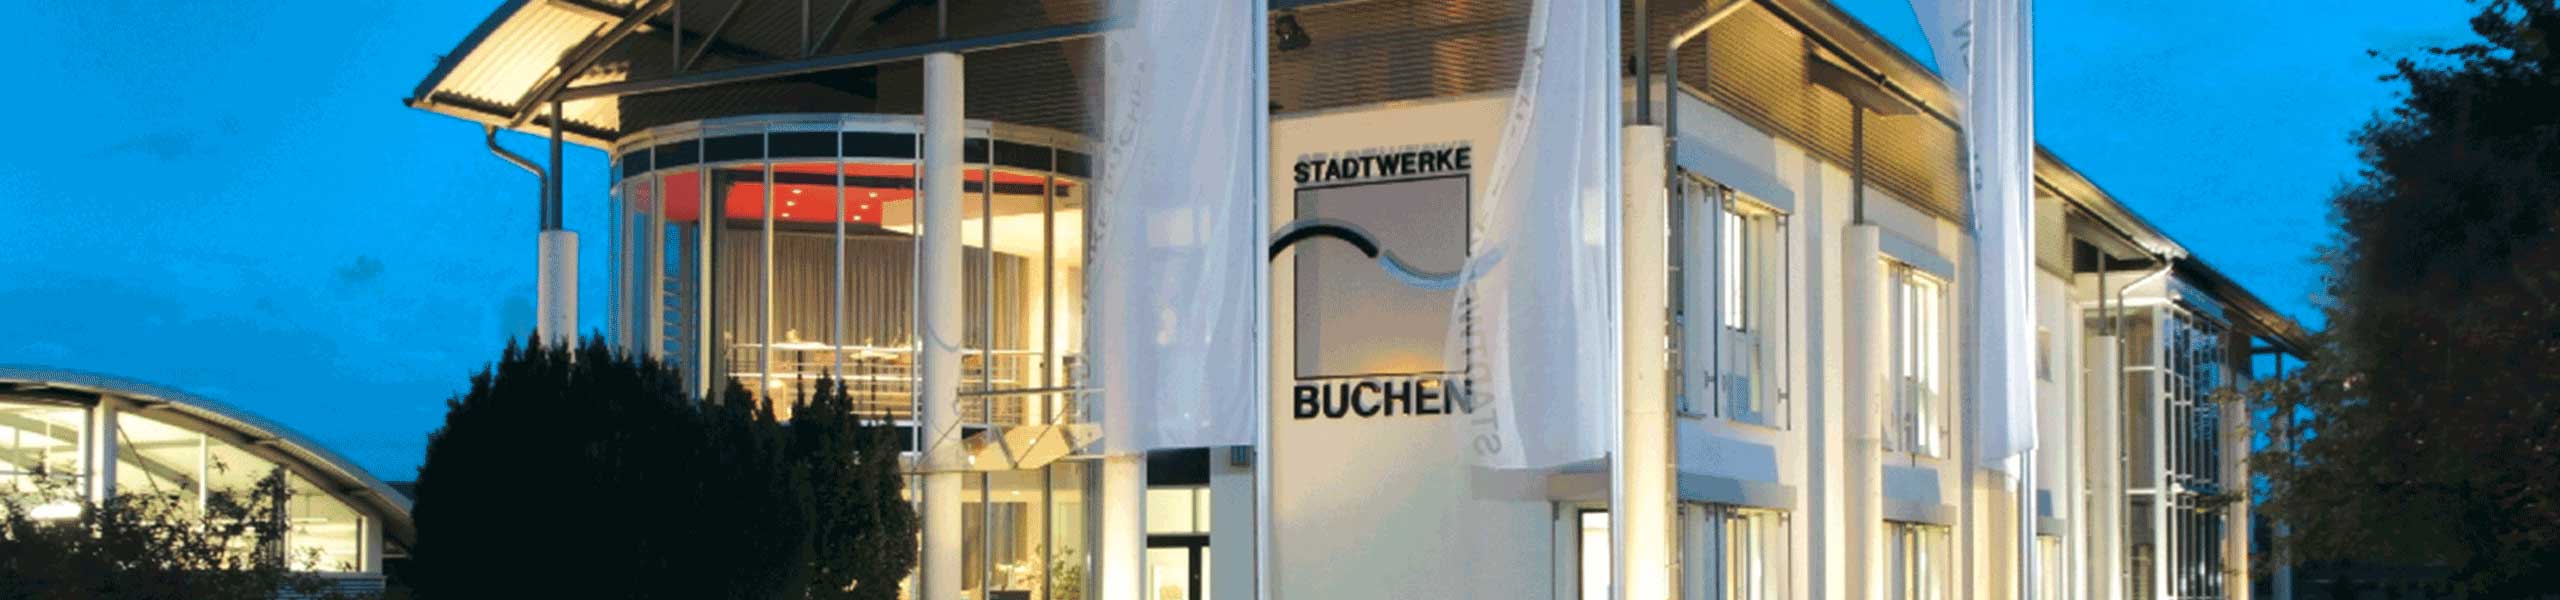 Stadtwerke Buchen GmbH & Co KG - Ihr Versorger vor Ort - Wasser